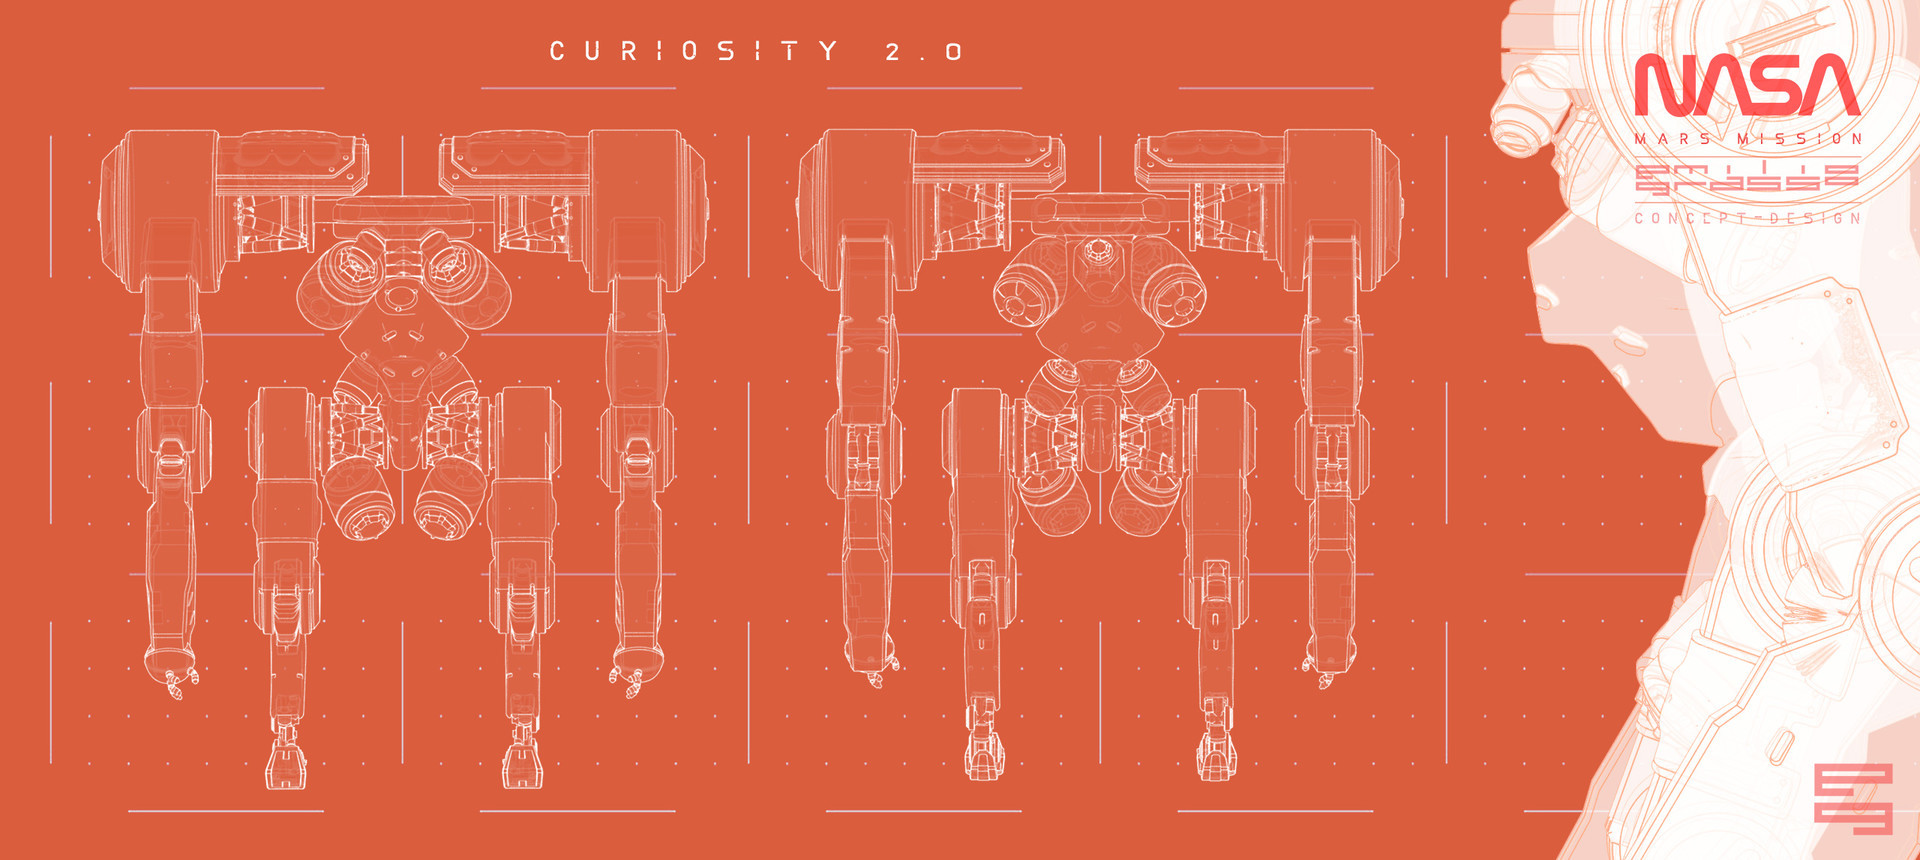 CURIOSITY 2.0 - Oragne Print